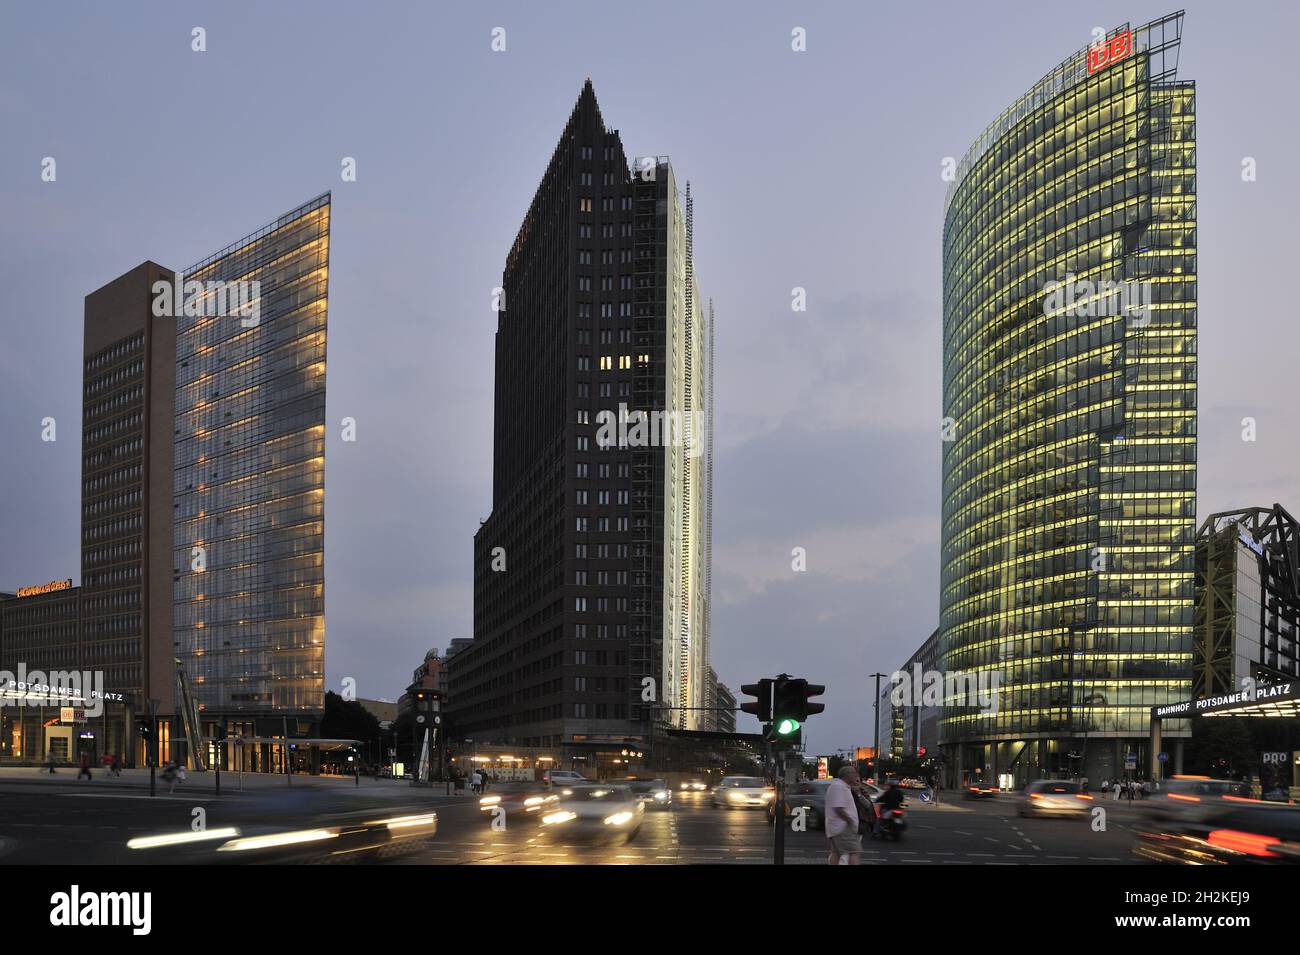 Potsdamer Platz con la torre del Bahn, la torre Kollhoff y la casa debis por Renzo Piano (izquierda), Berlín, Alemania Foto de stock